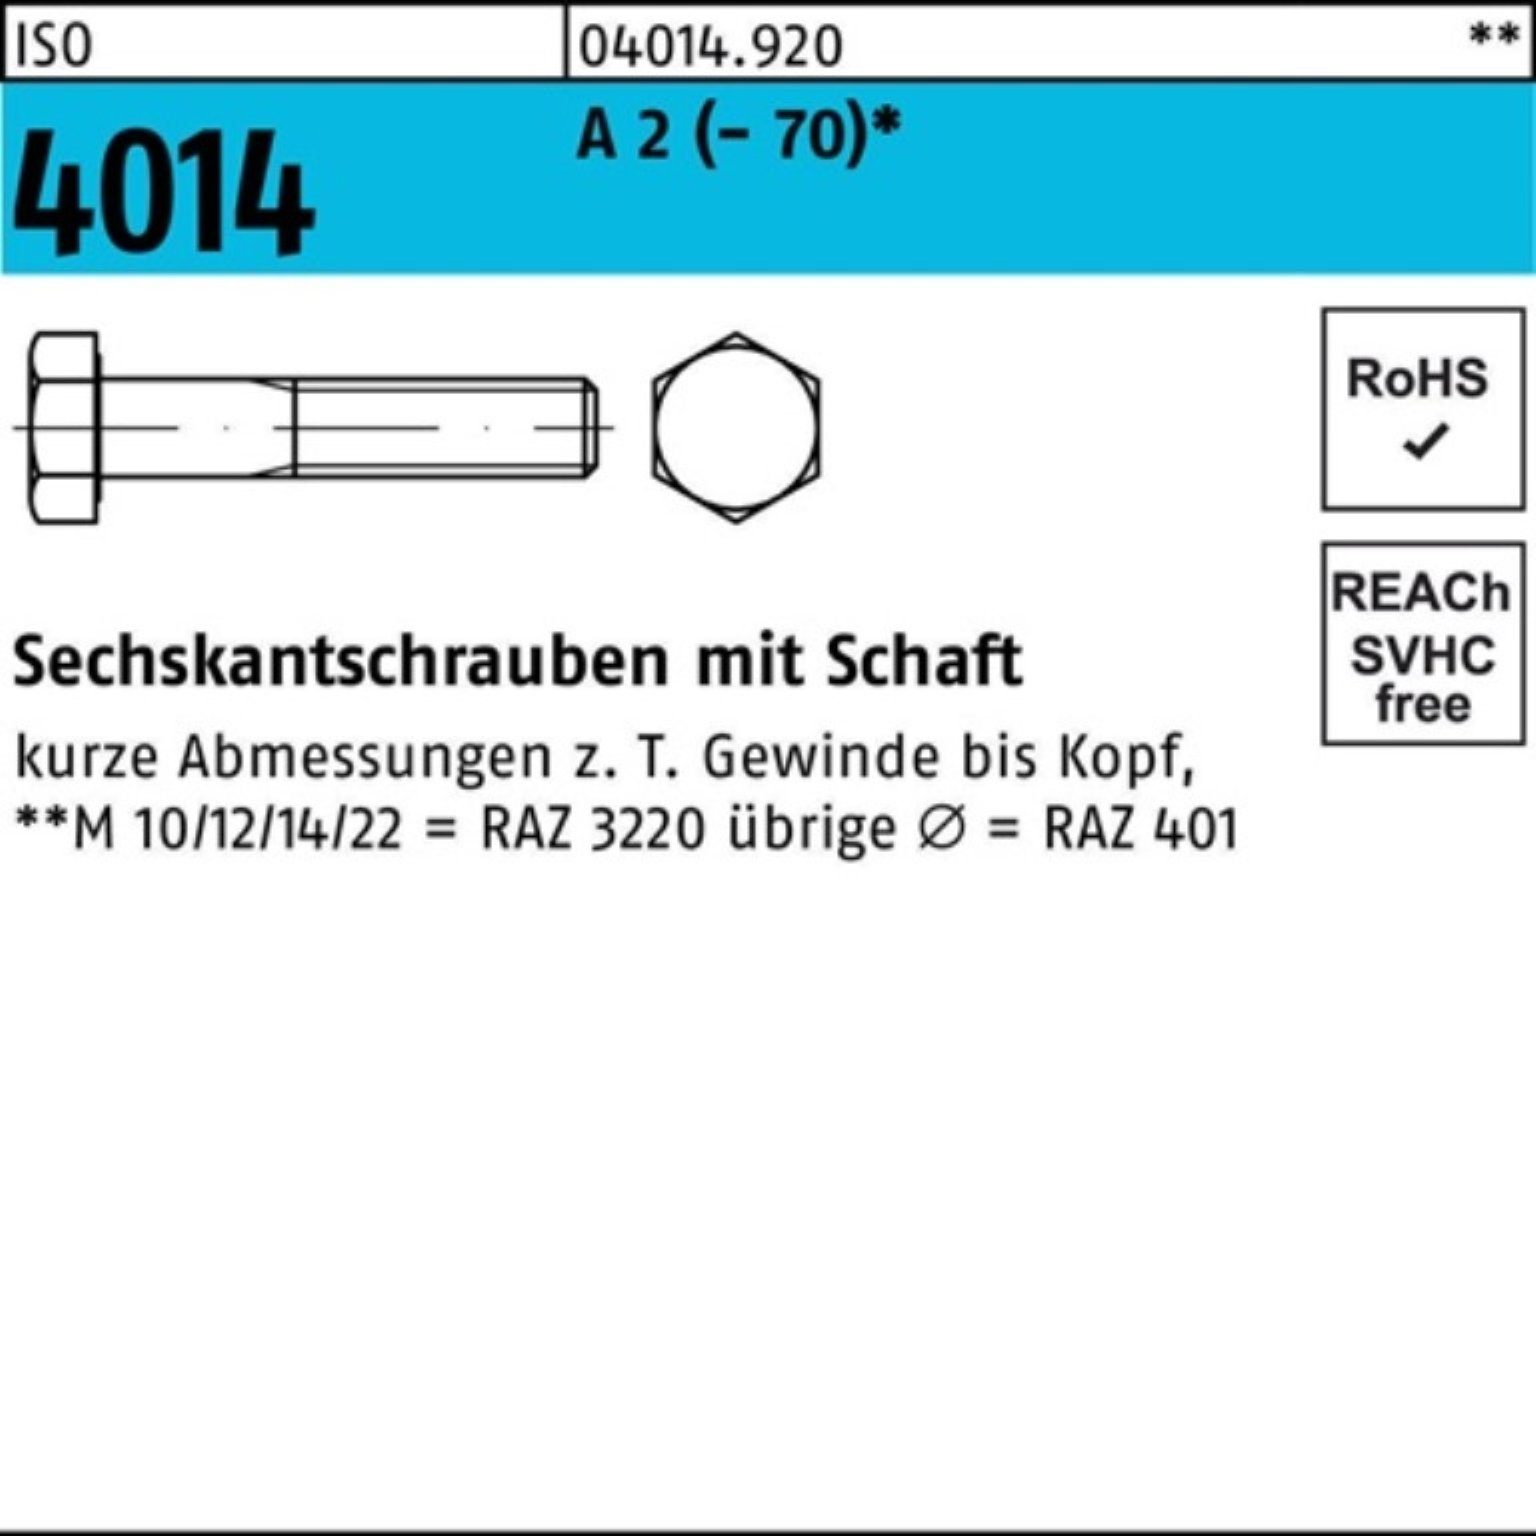 2 M24x 1 4014 St A Pack Sechskantschraube Bufab (70) 180 ISO Sechskantschraube 100er Schaft